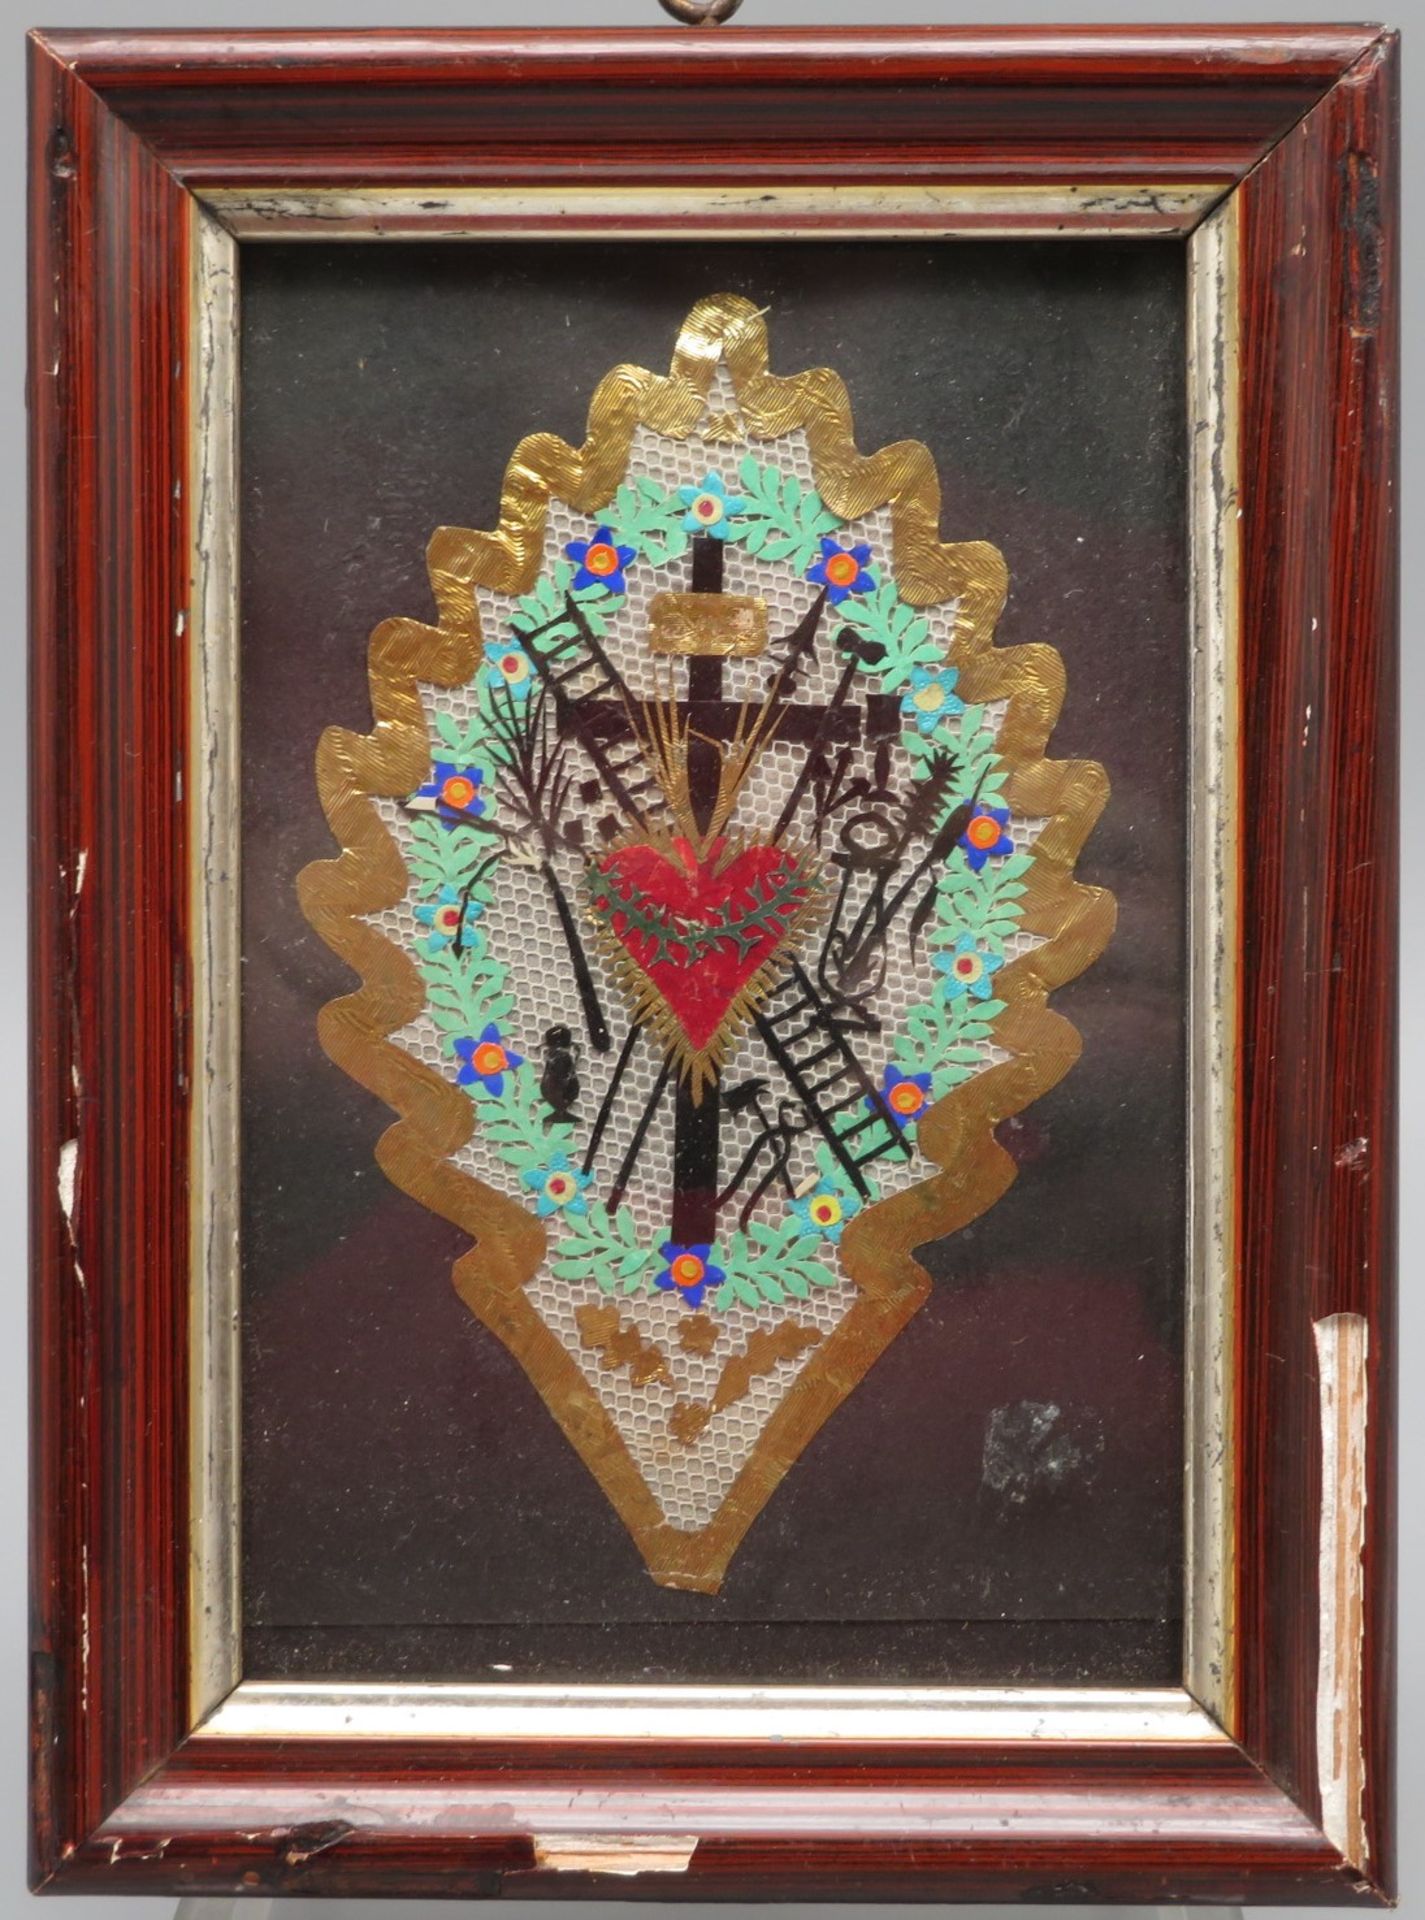 Klosterarbeit im Rahmen, 19. Jahrhundert, "Herz Jesu", 19 x 14 cm.